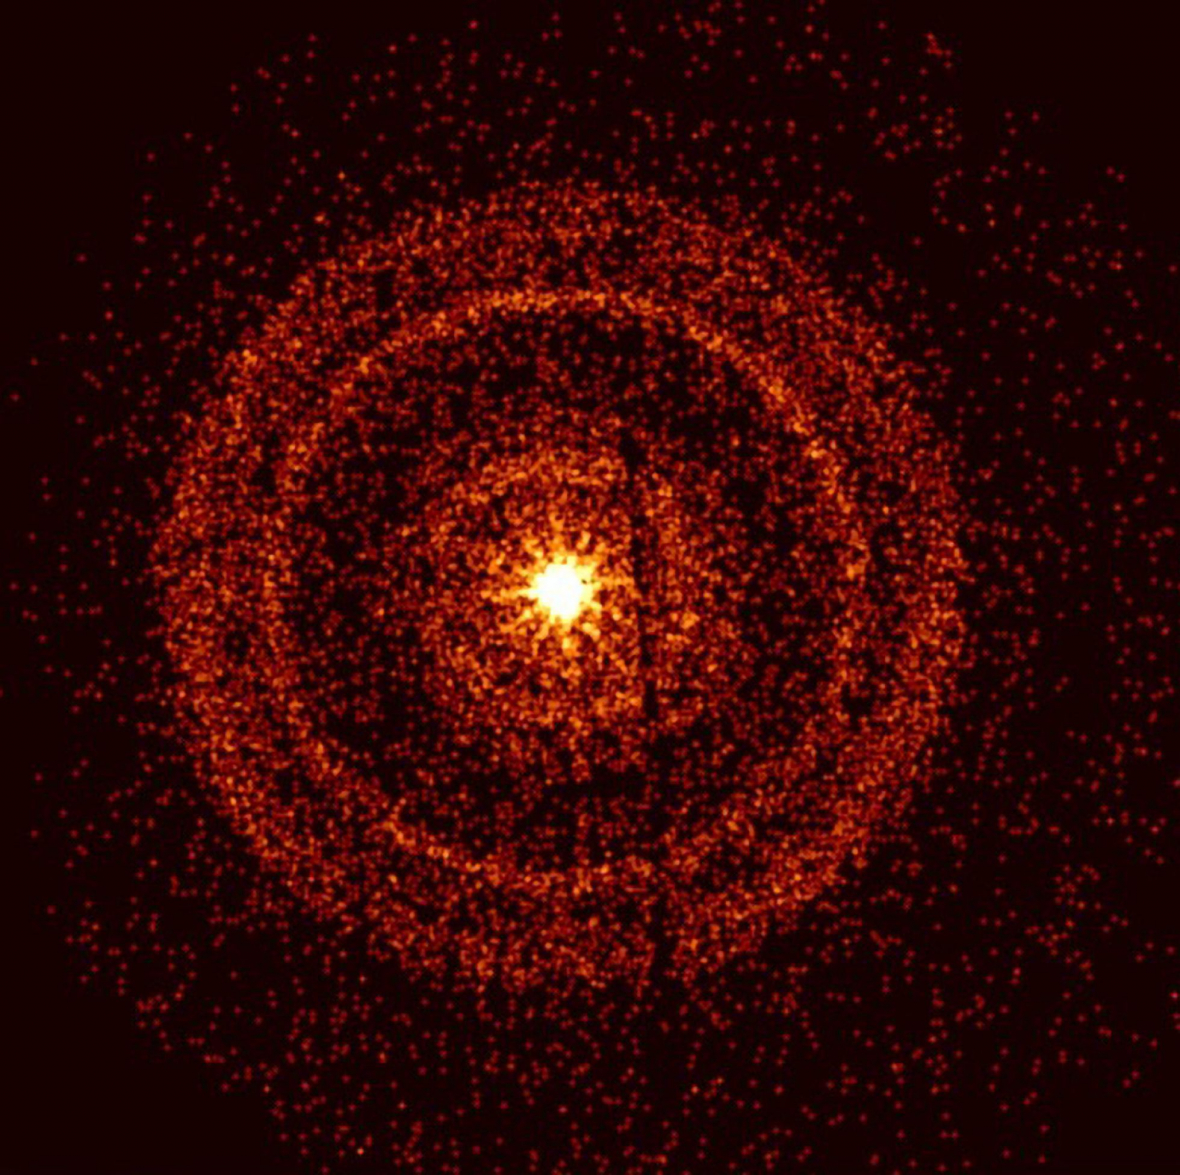 Снимок послесвечения гамма-вспышки GRB 221009A примерно через час после того, как она была впервые обнаружена